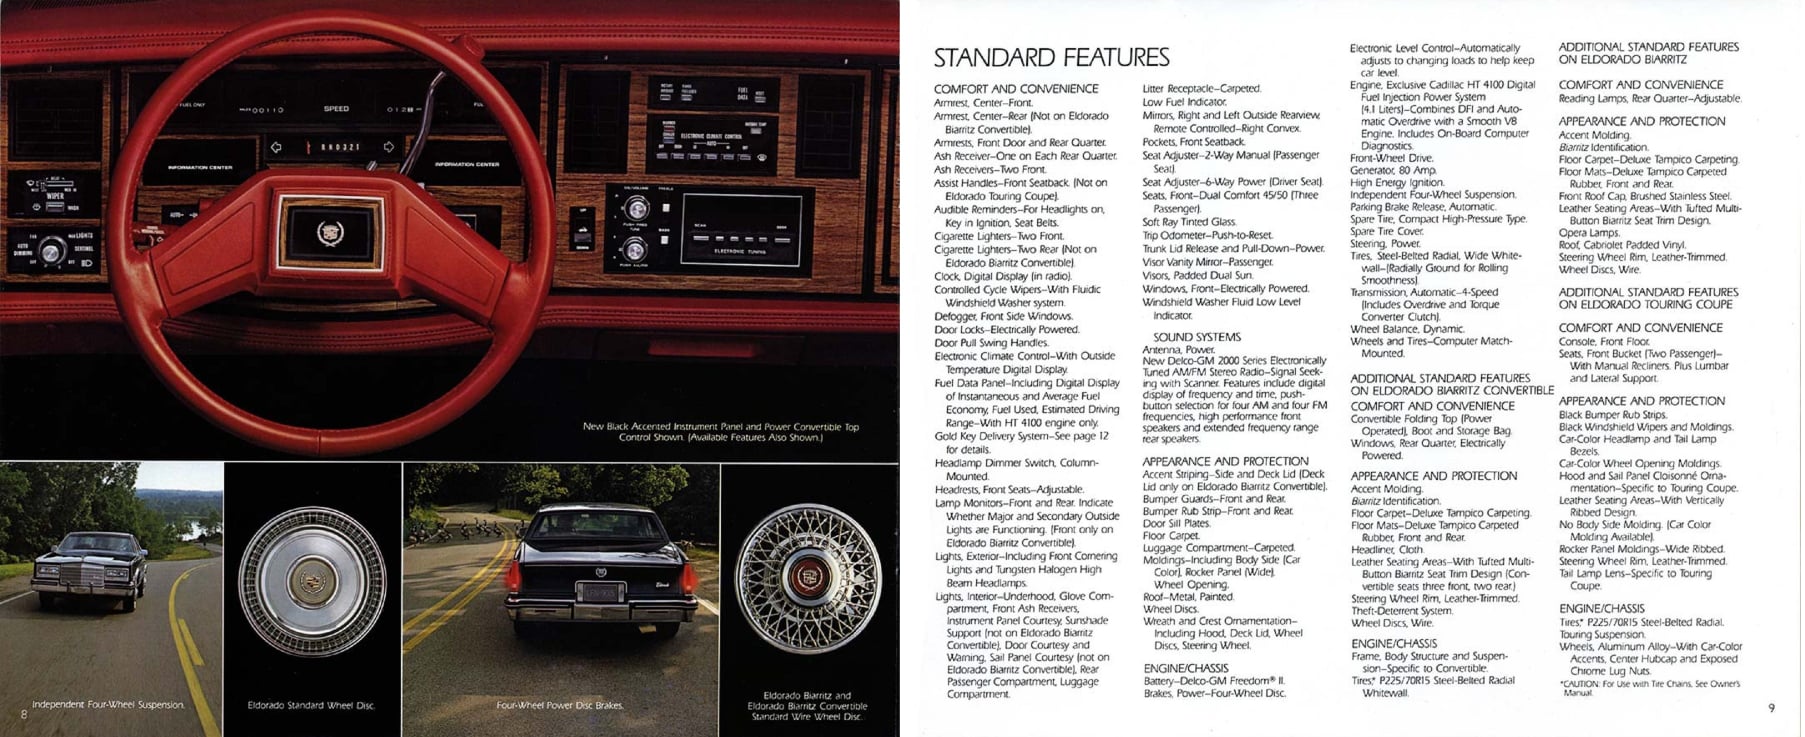 1984 Cadillac Eldorado Brochure 08-09